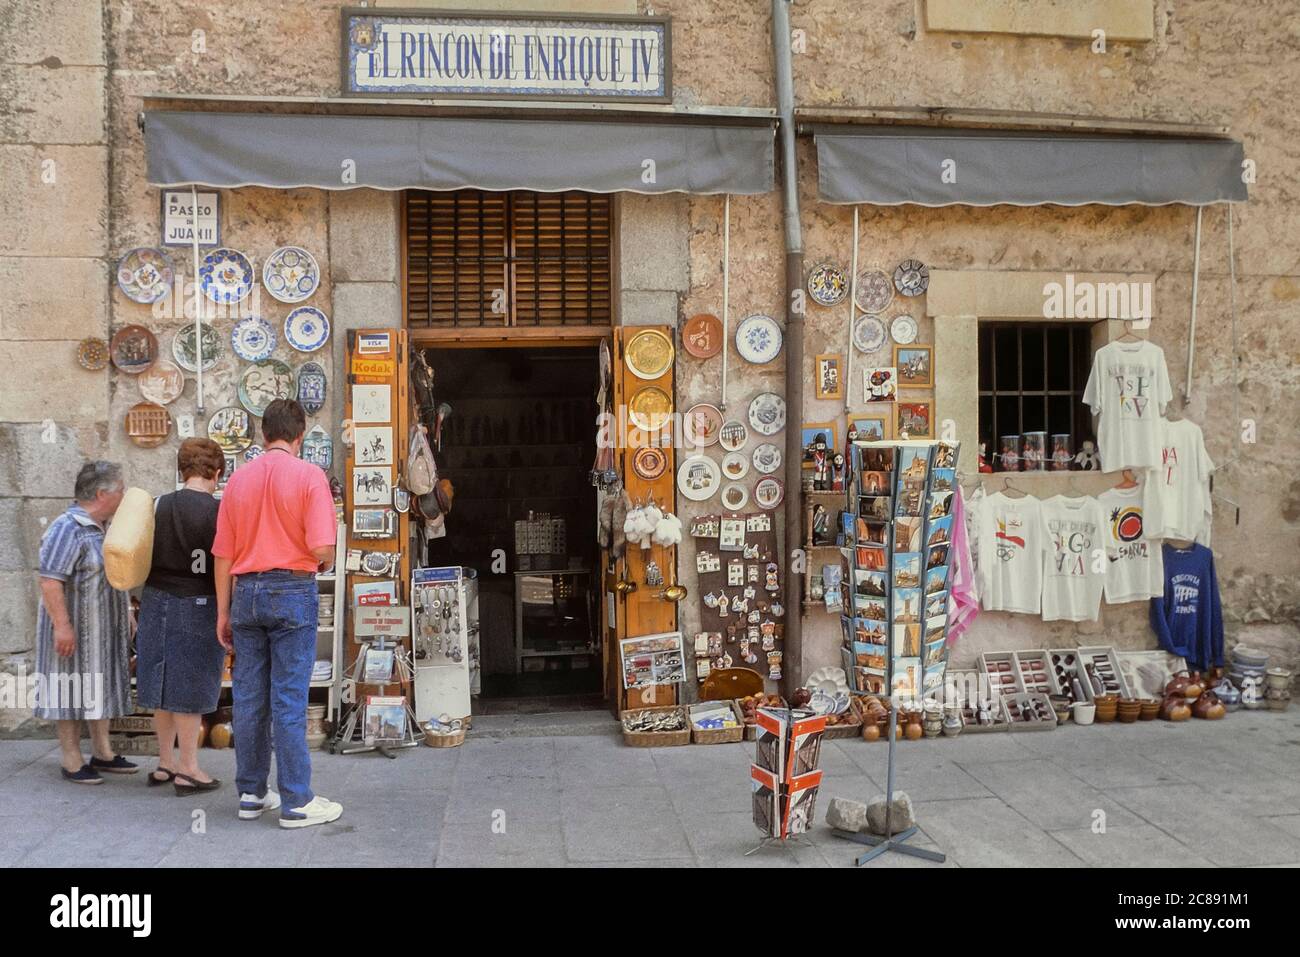 El Rincón de Enrique IV Souvenir Shop, Segovia, Spain. Circa 1990 Stock Photo